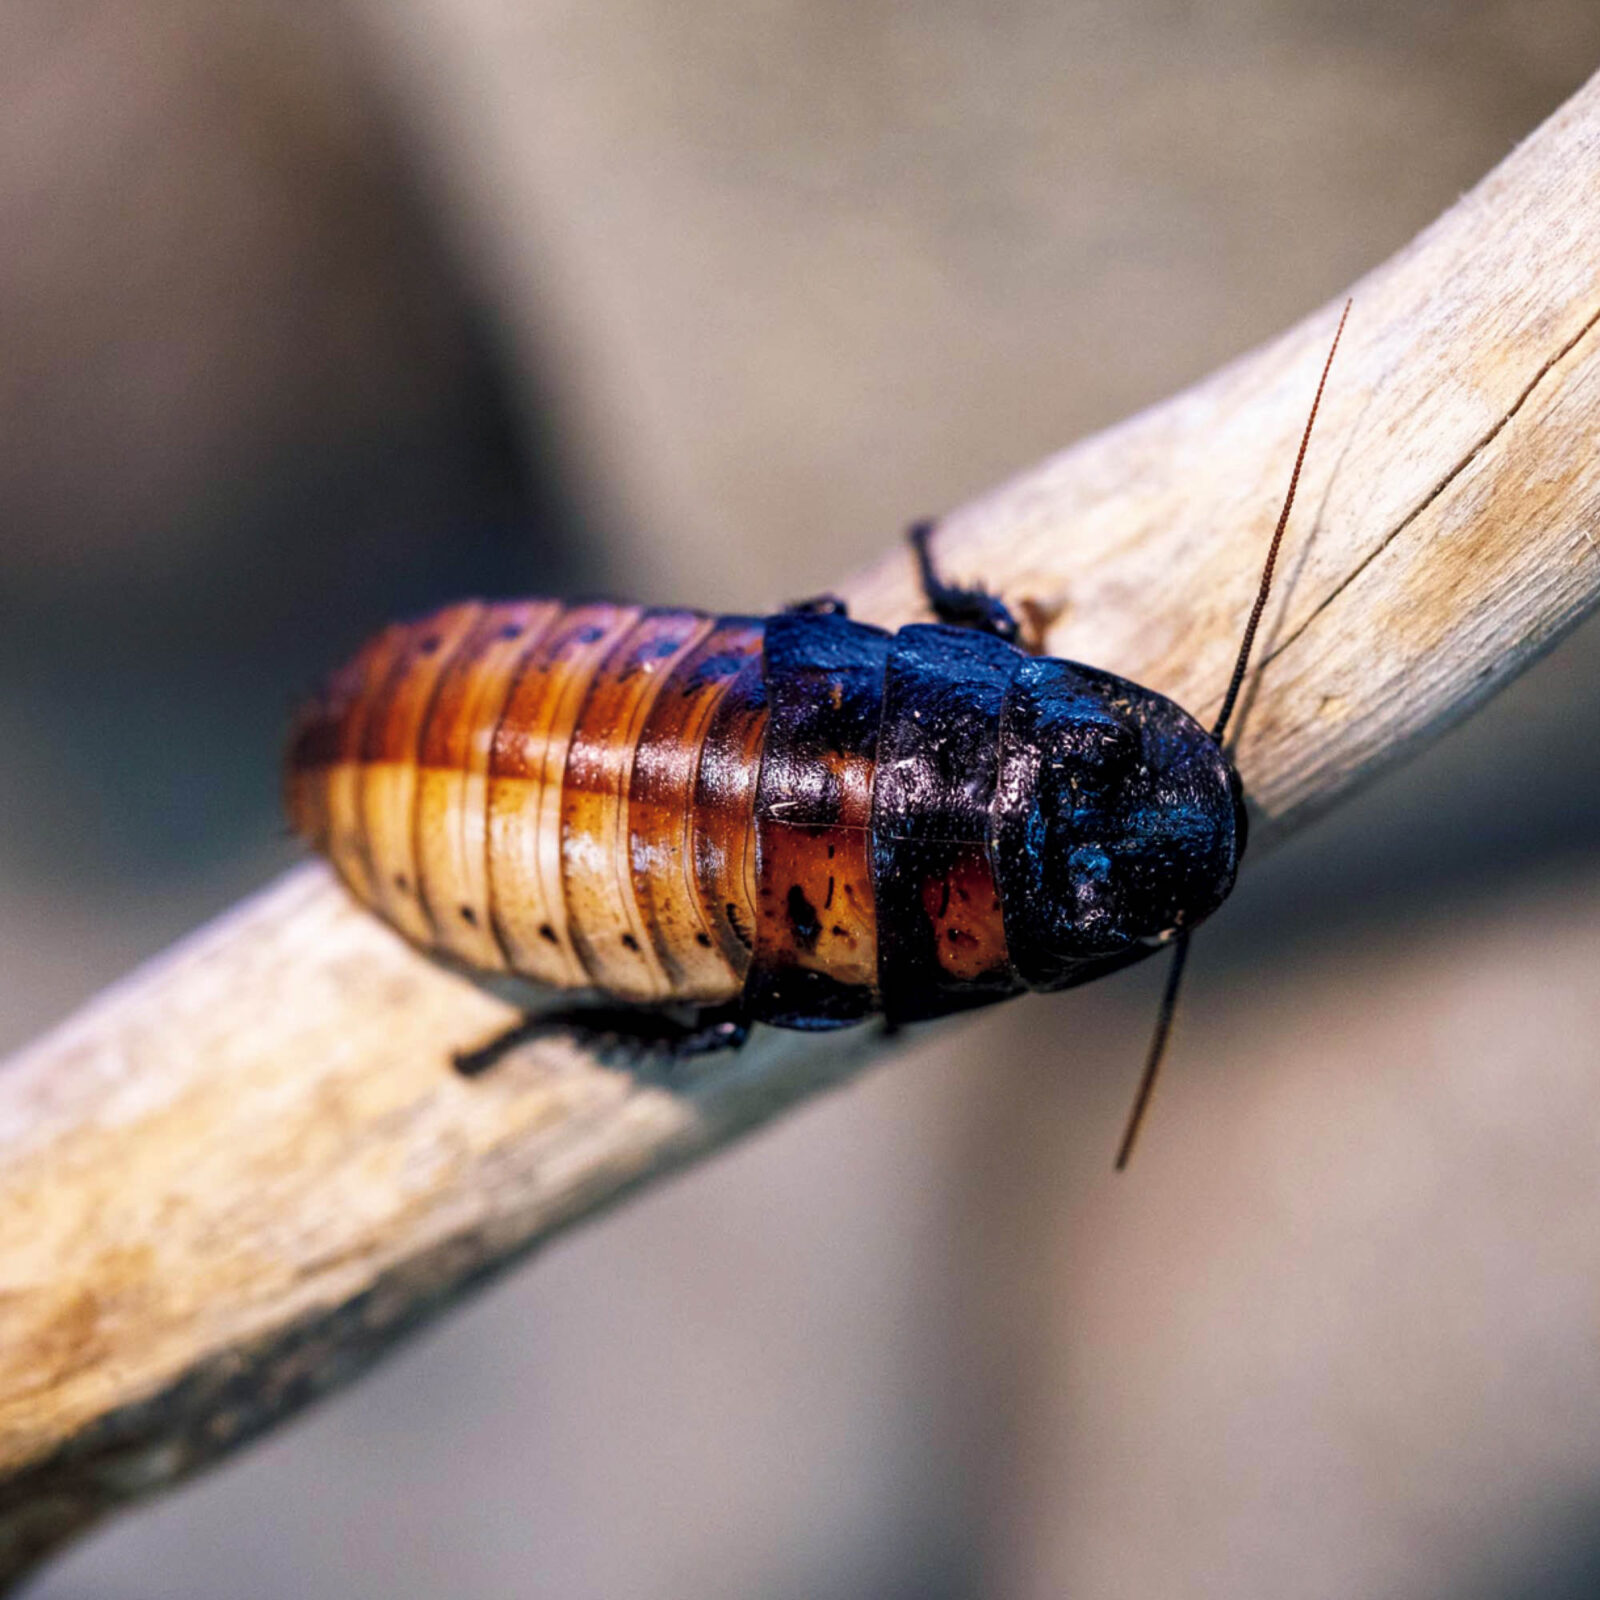 マダガスカルゴキブリ、珍しい両方の性別の特徴を持つ雌雄モザイク個体